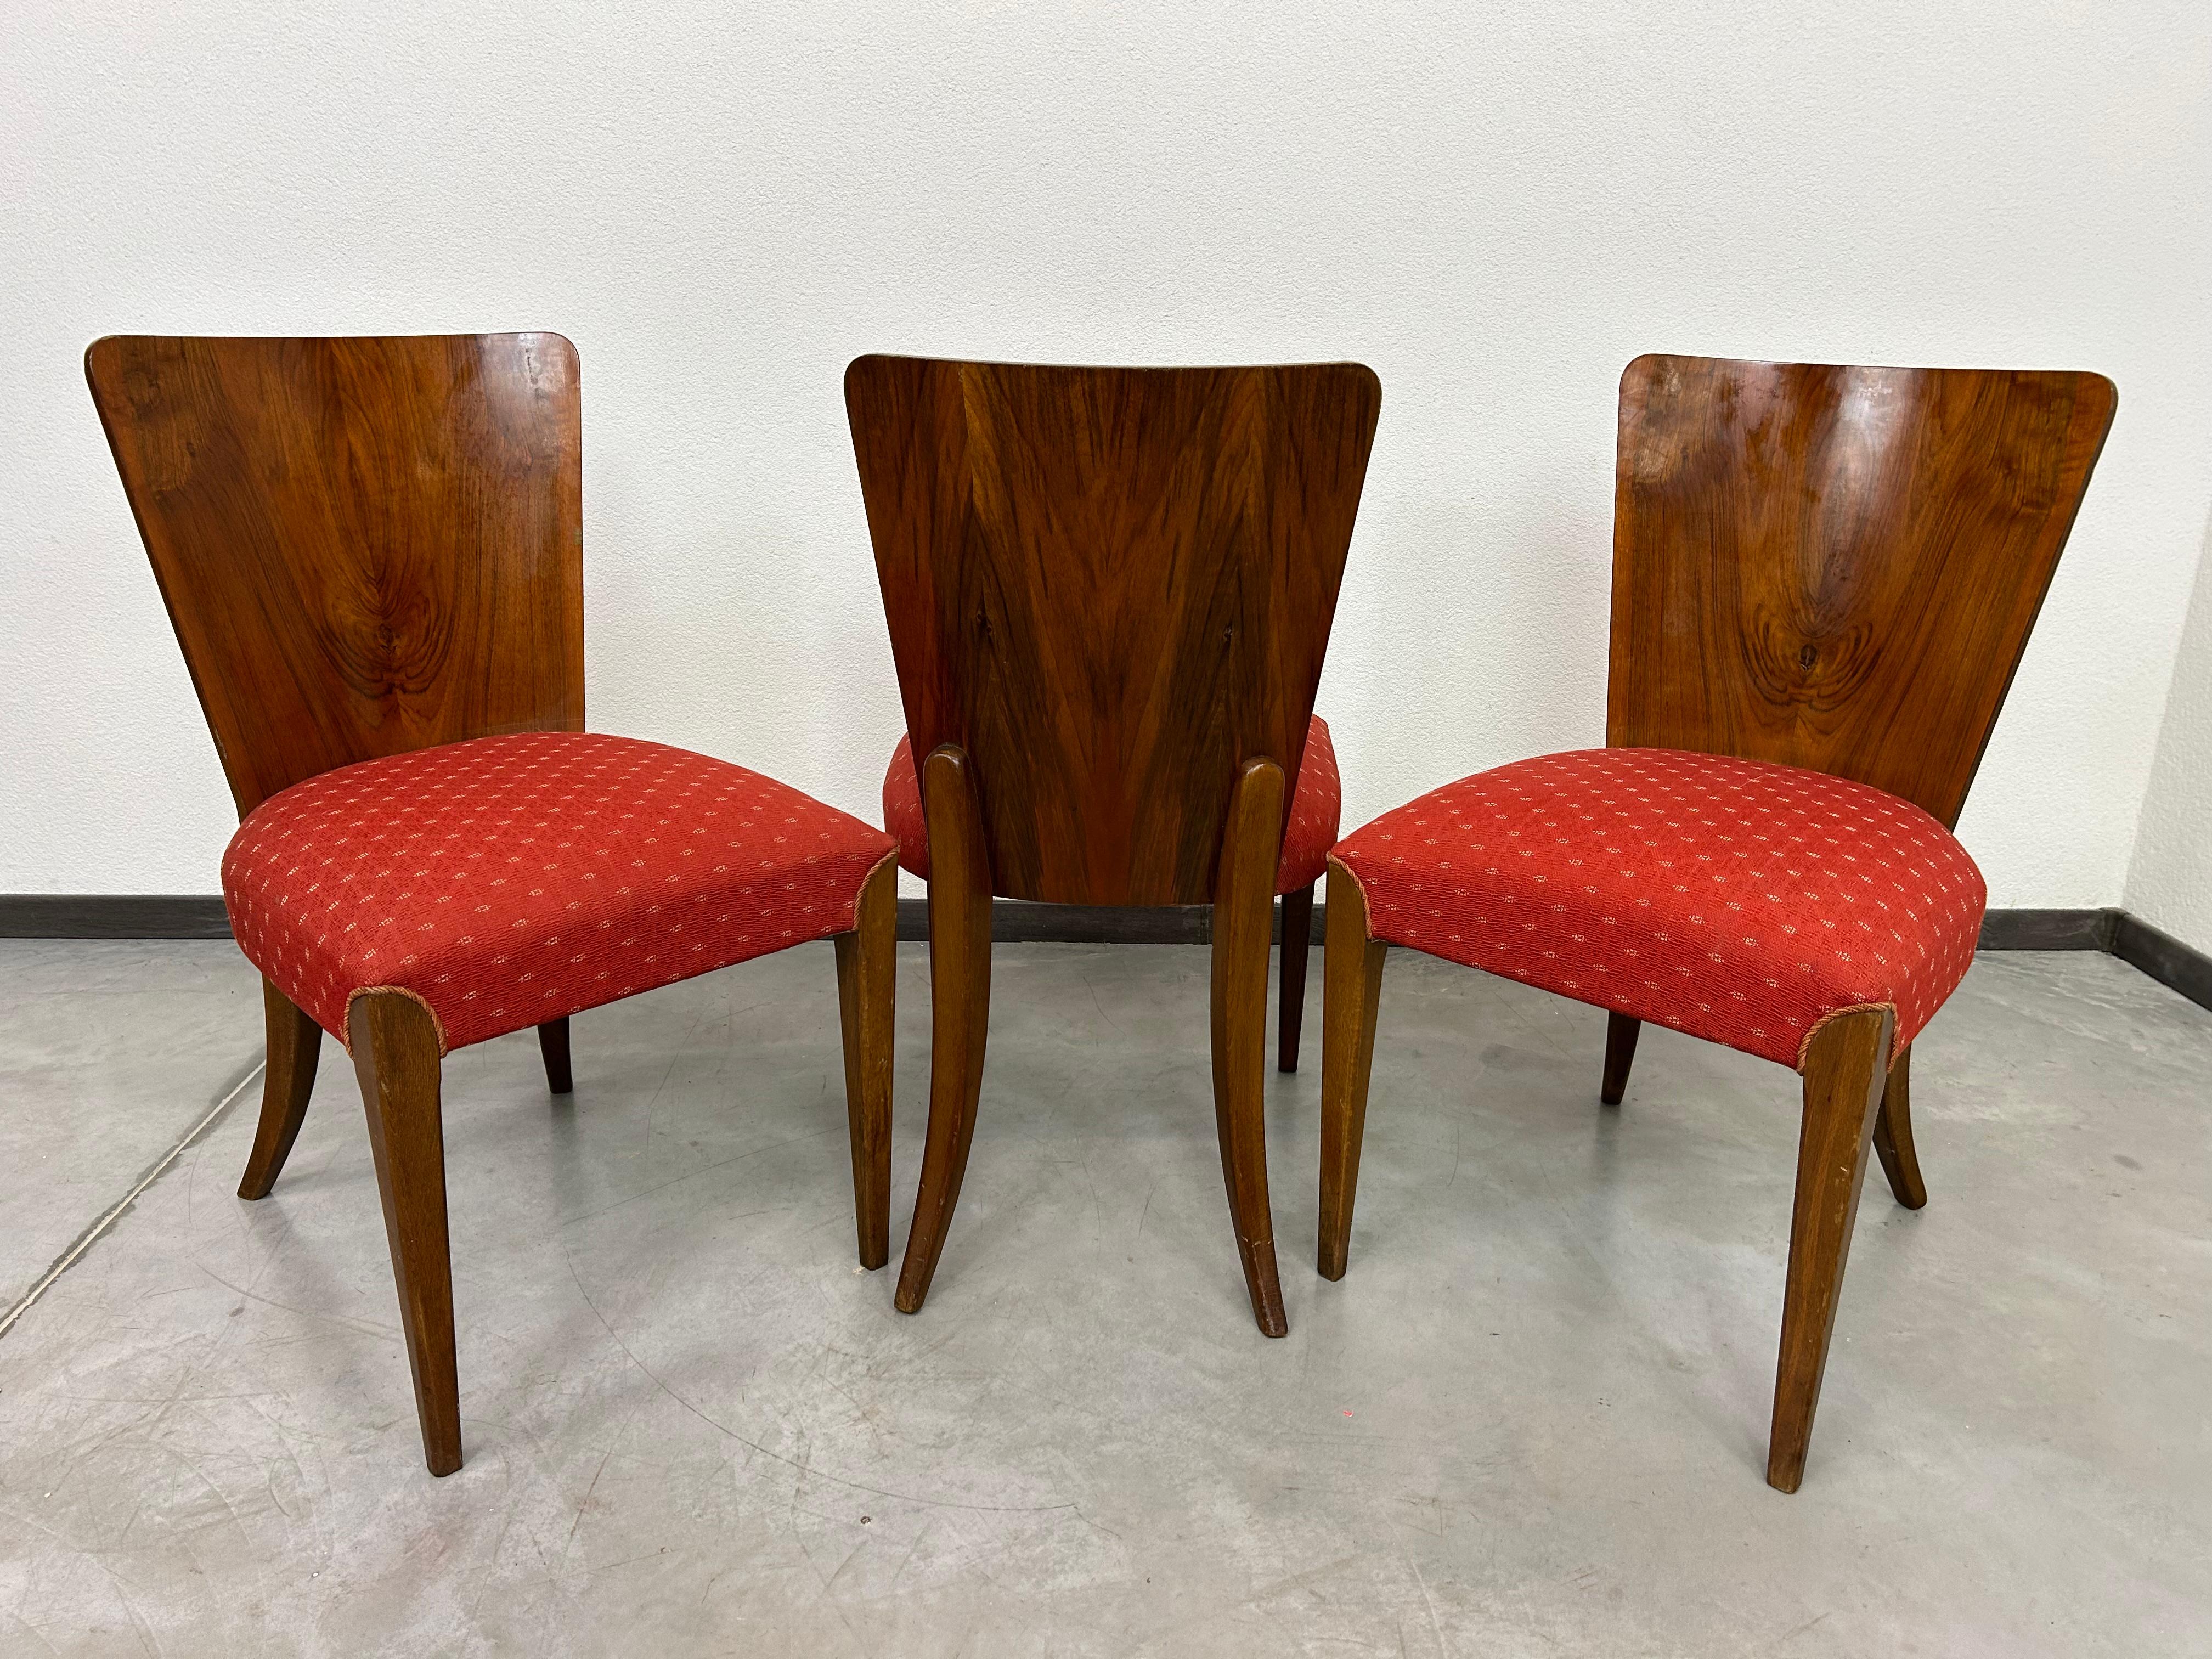 Satz von vier Esszimmerstühlen aus Nussbaumholz, Mod. H-214, entworfen von Jindrich Halabala für Up Zavody in sehr schönem Originalzustand. Hergestellt in den 1950er Jahren in der Tschechoslowakei.